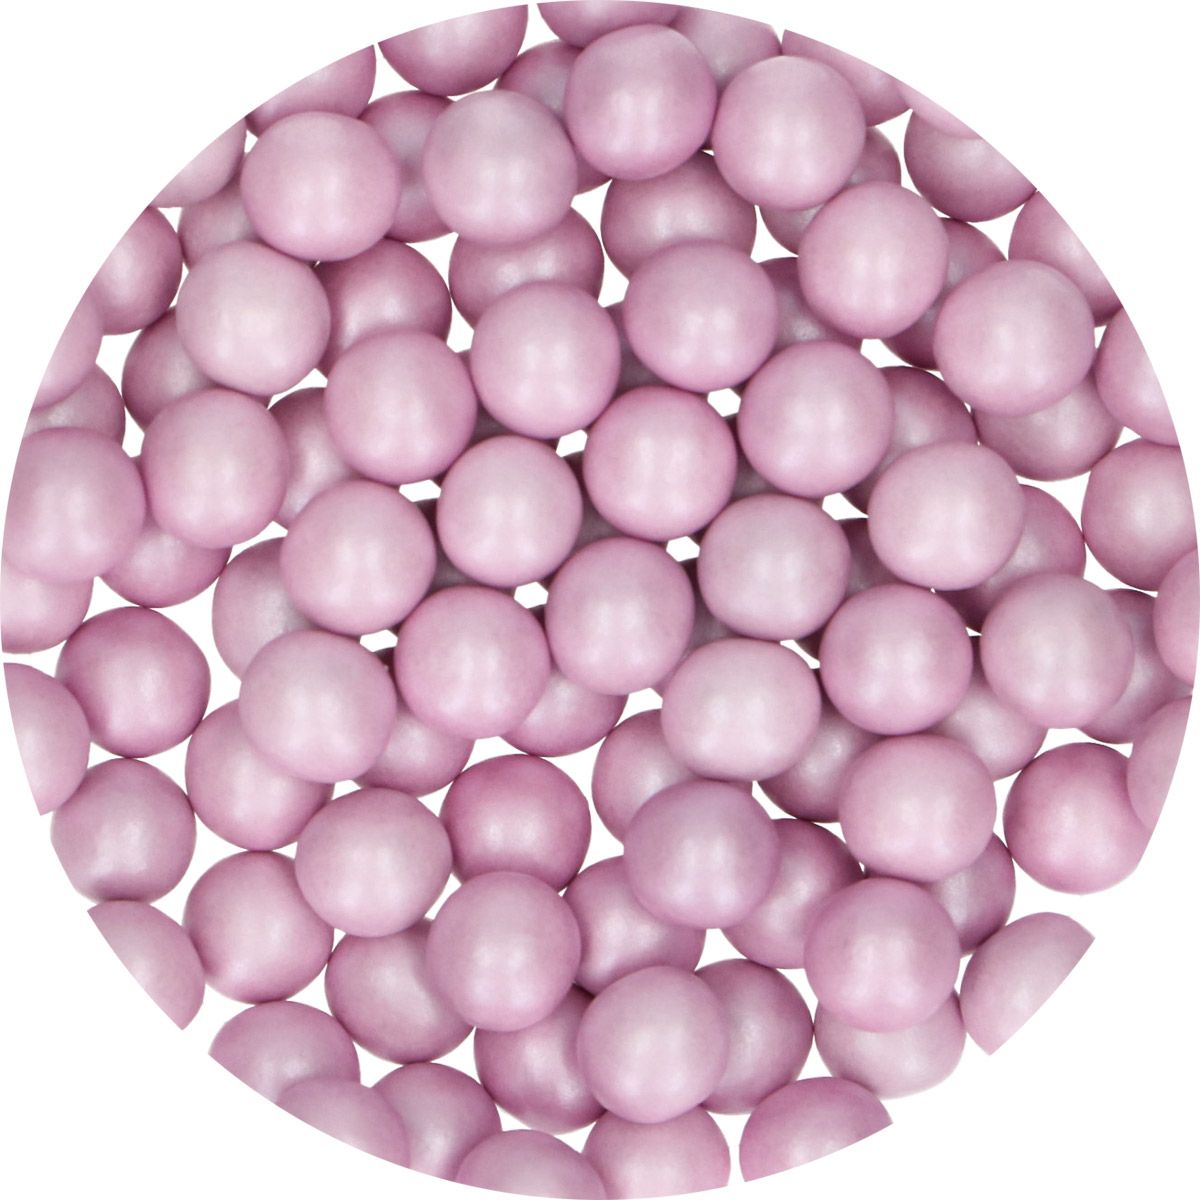 Schoko Perlen groß lila | 70 g